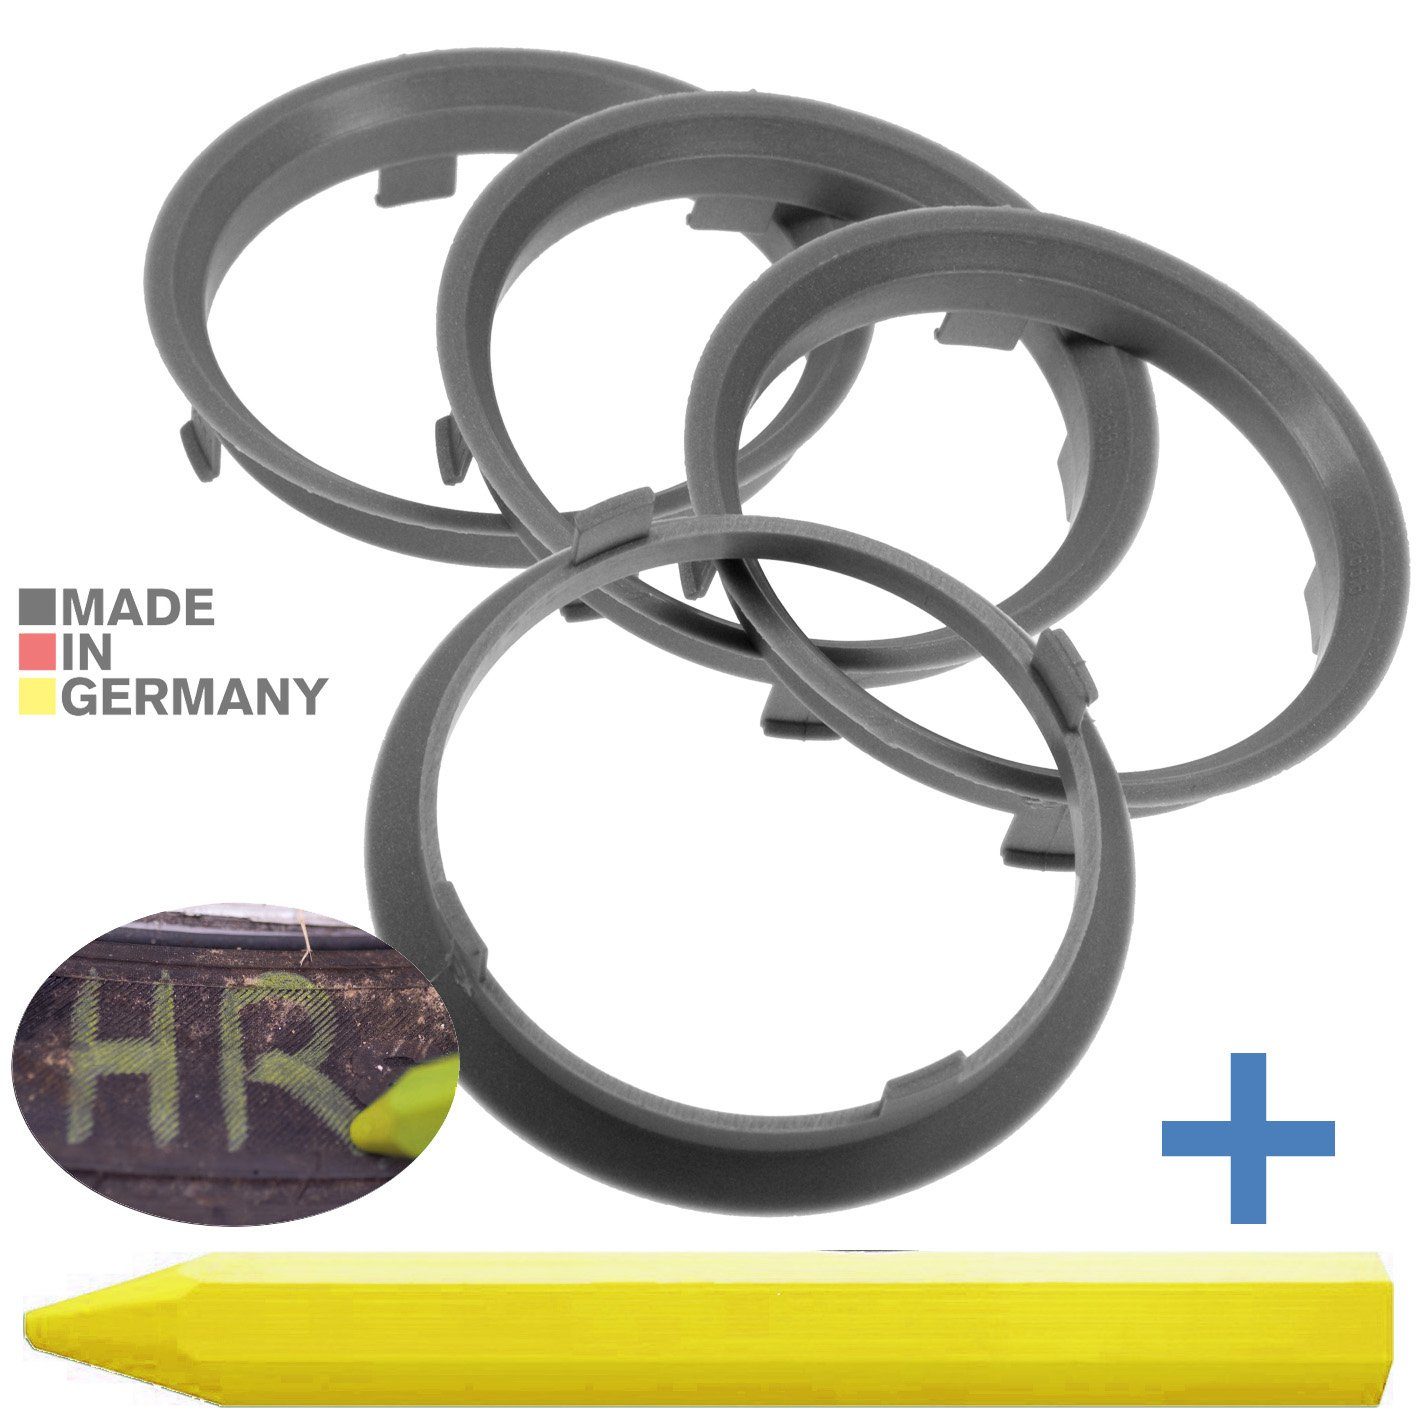 RKC Zentrierringe 70,1 Fett Reifen mm x + 4X 1x 66,6 Ringe Silber Kreide Reifenstift Felgen Maße: Stift,